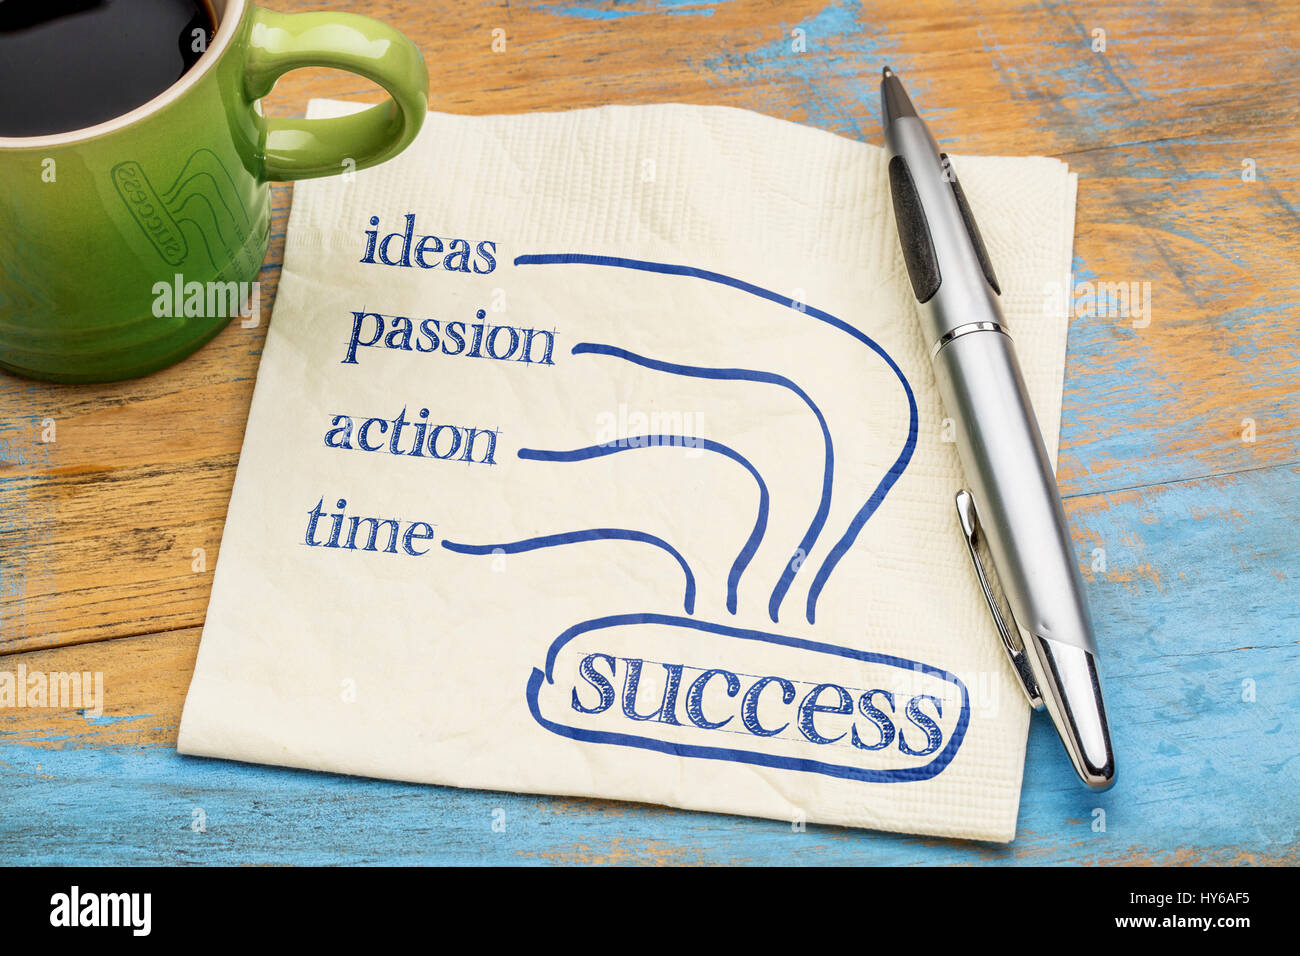 Ideen, Leidenschaft, Action, Zeit - Erfolgskonzept Zutaten - Handschrift auf einer Serviette mit einer Tasse Kaffee Stockfoto